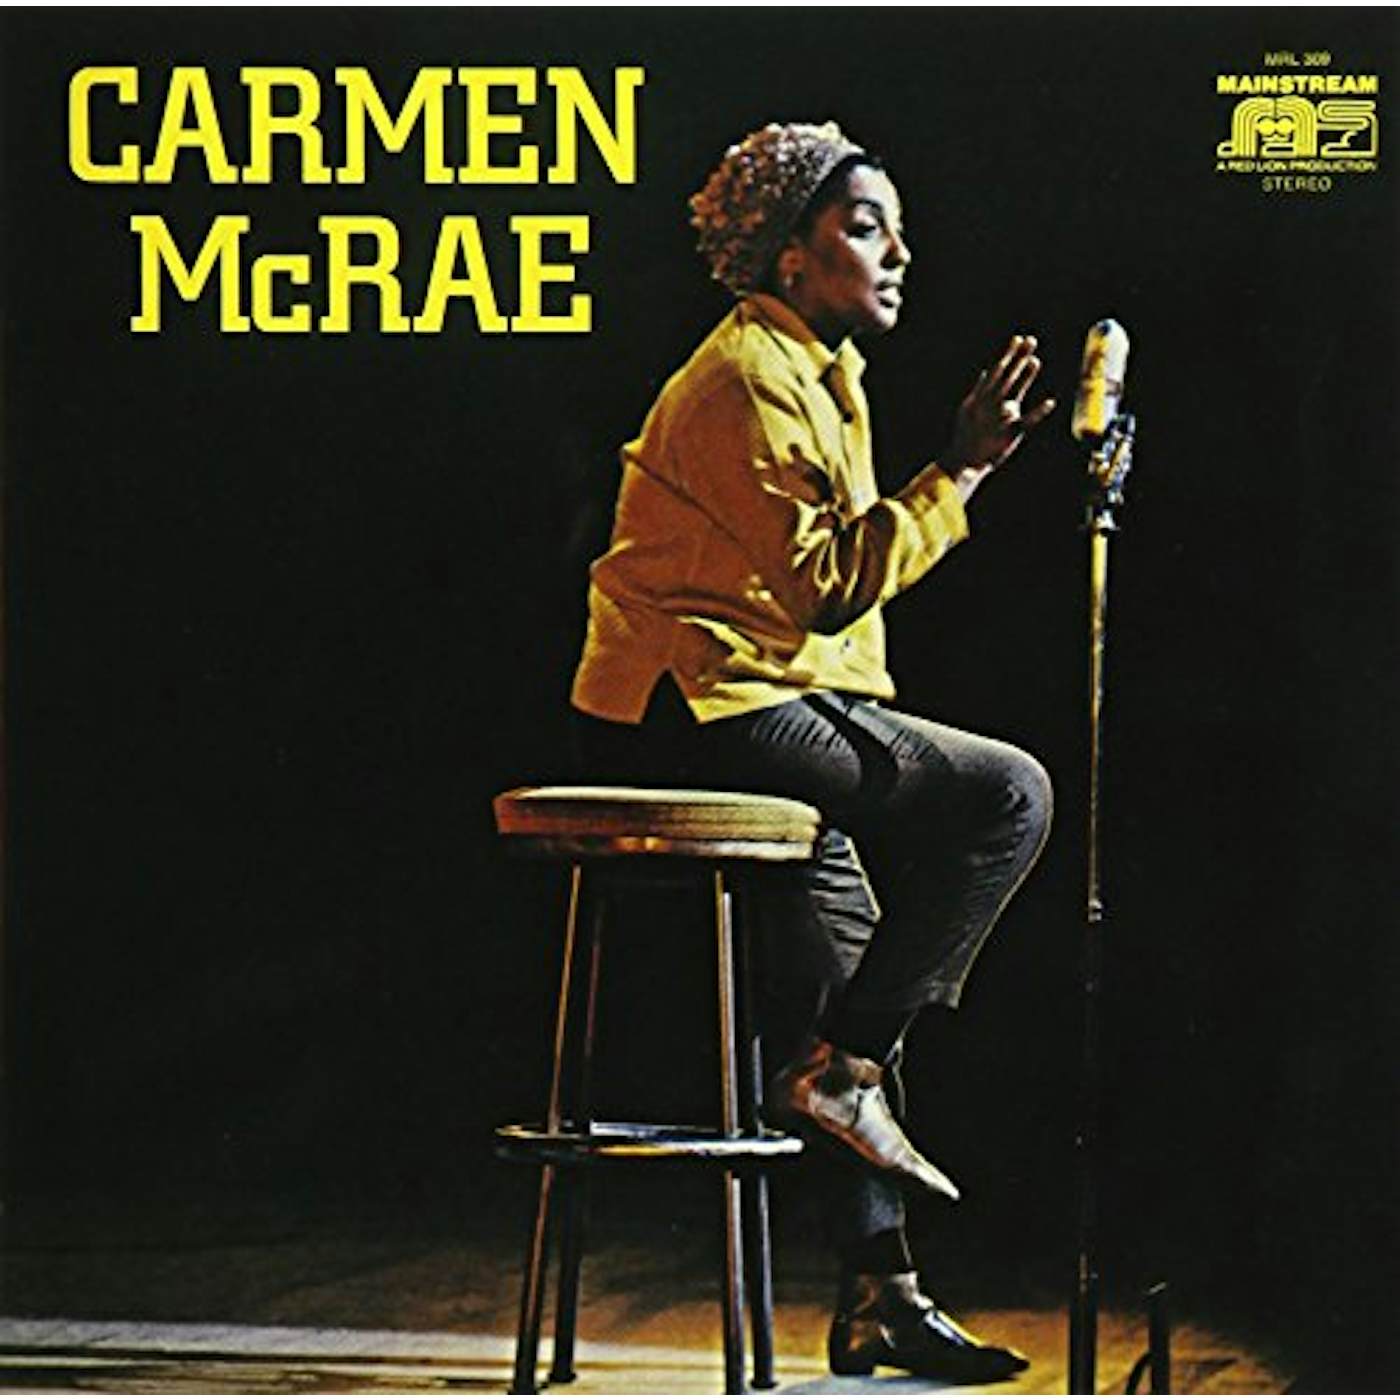 CARMEN MCRAE CD